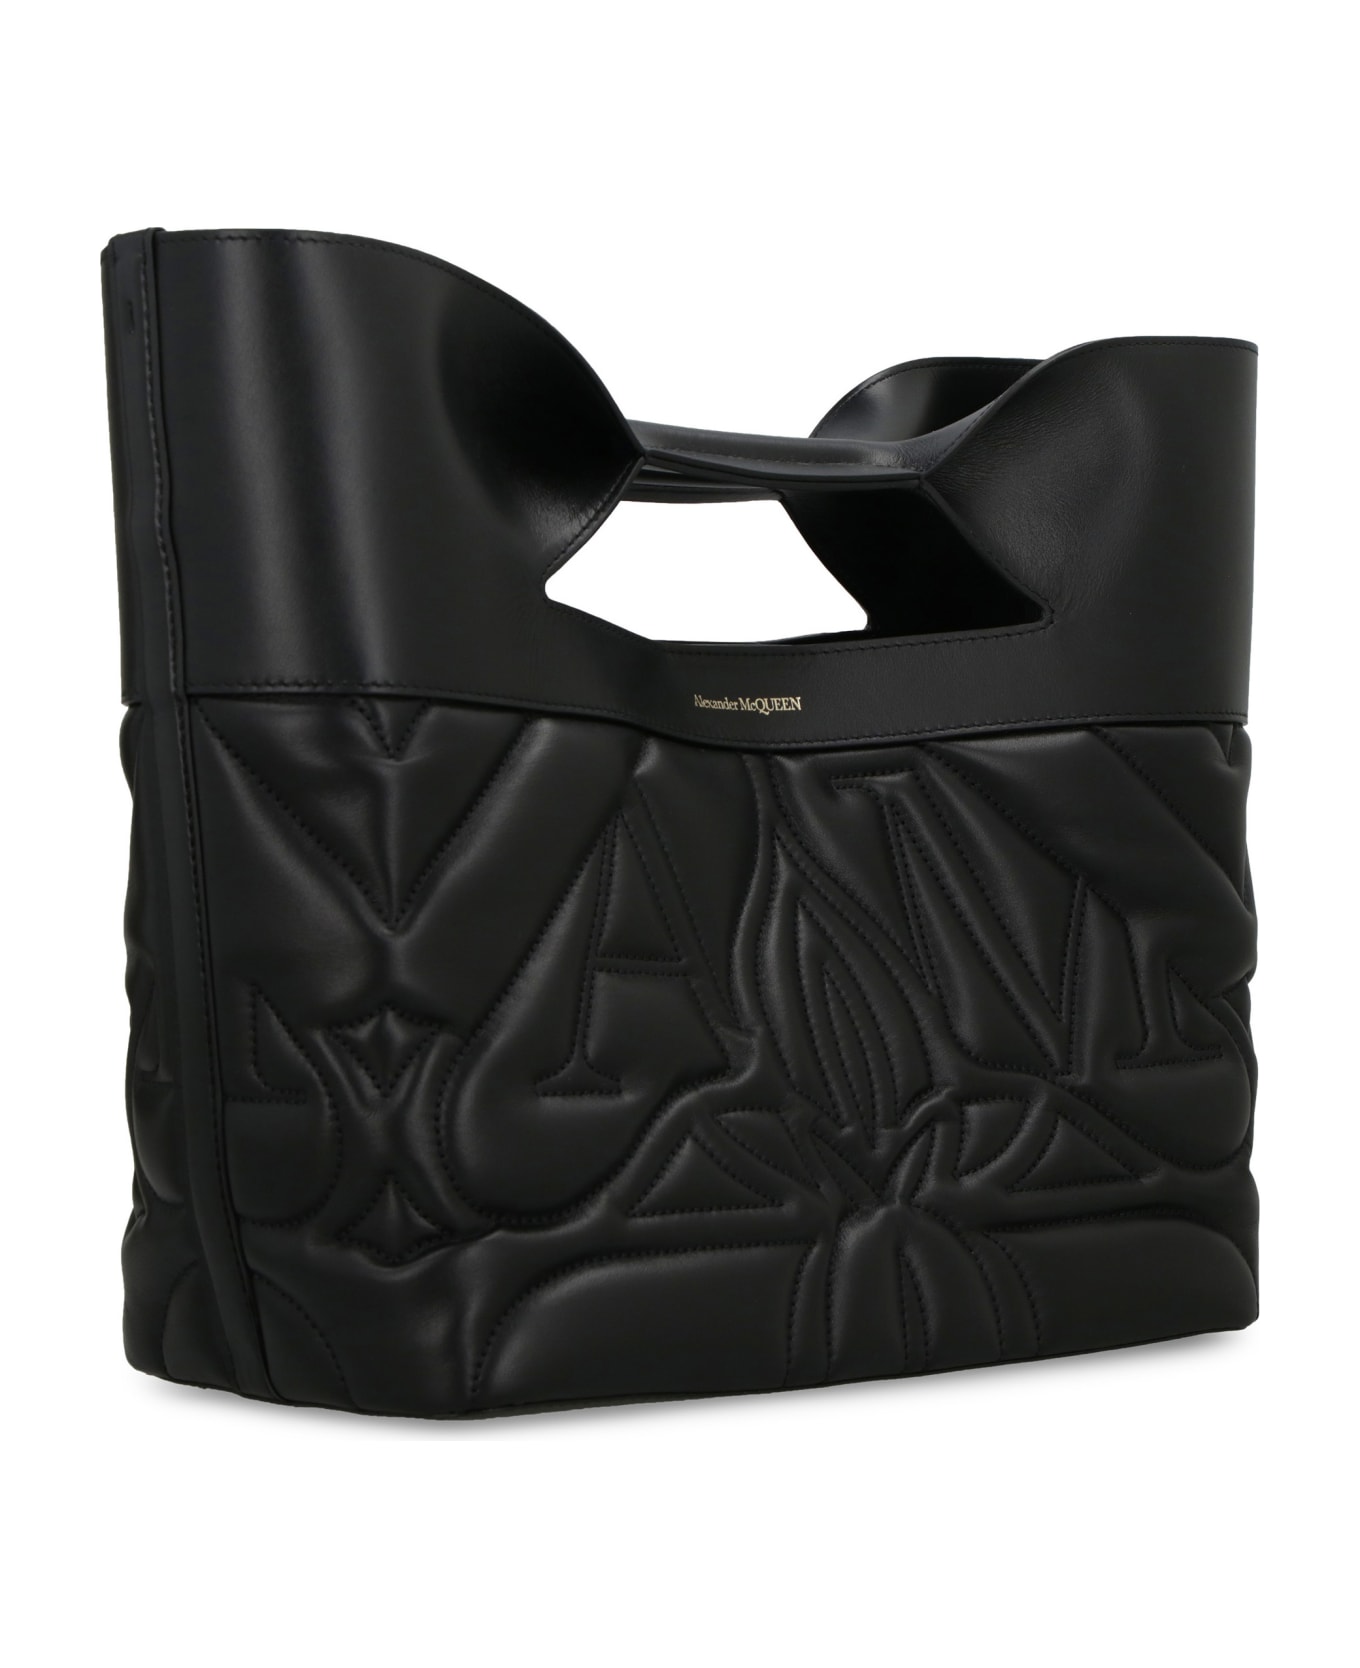 Alexander McQueen The Bow Bag - Black